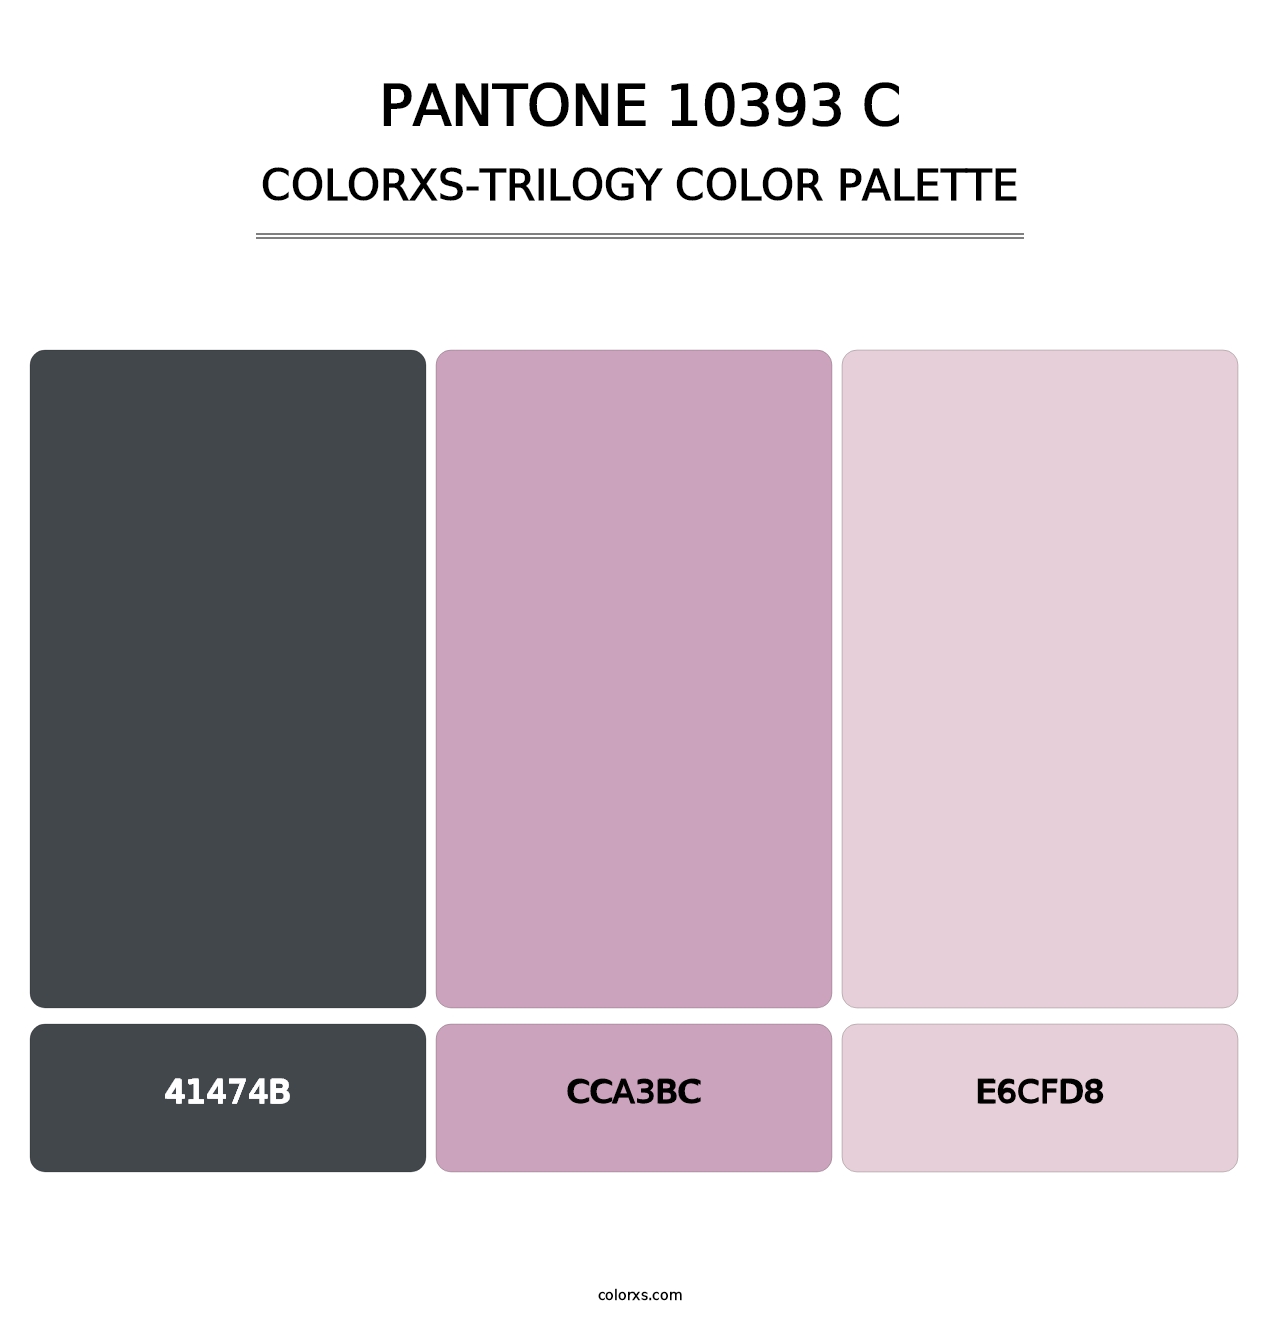 PANTONE 10393 C - Colorxs Trilogy Palette